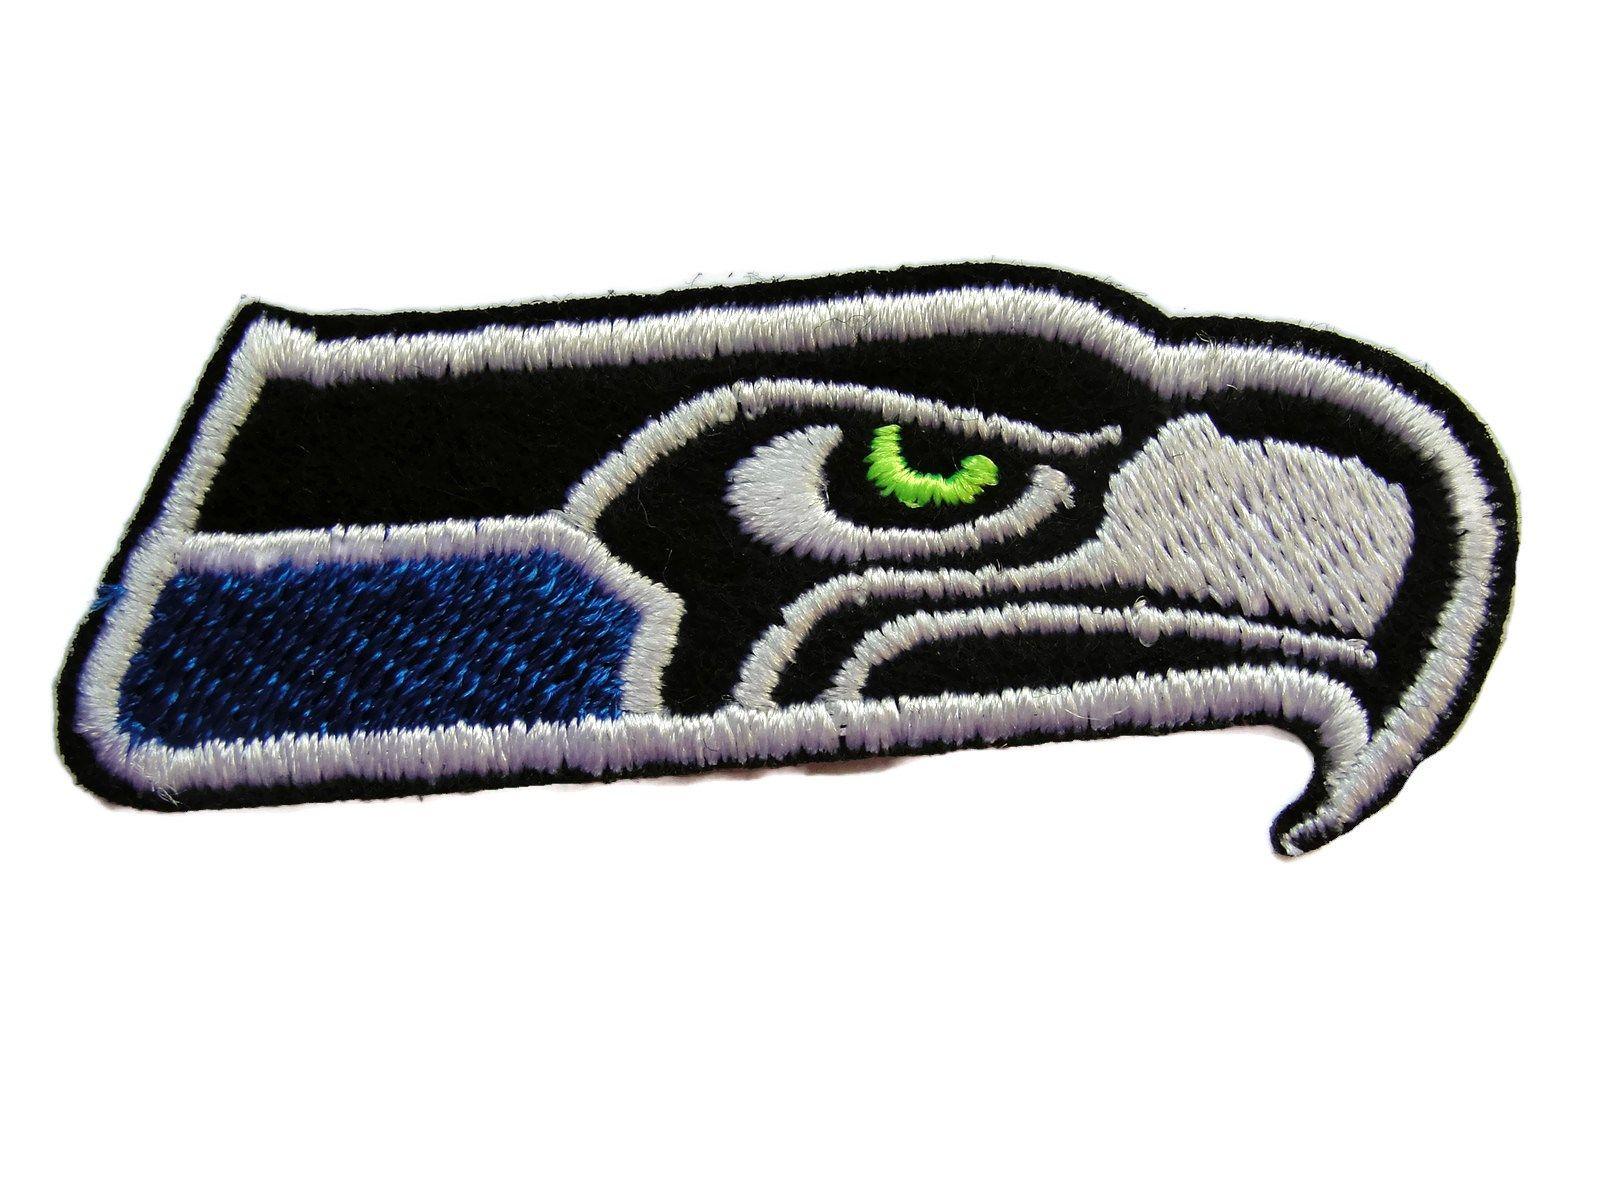 Hawk Head Logo - Hawk Head Stylized Logo Emblem Embroidered Iron On Patch Applique | eBay